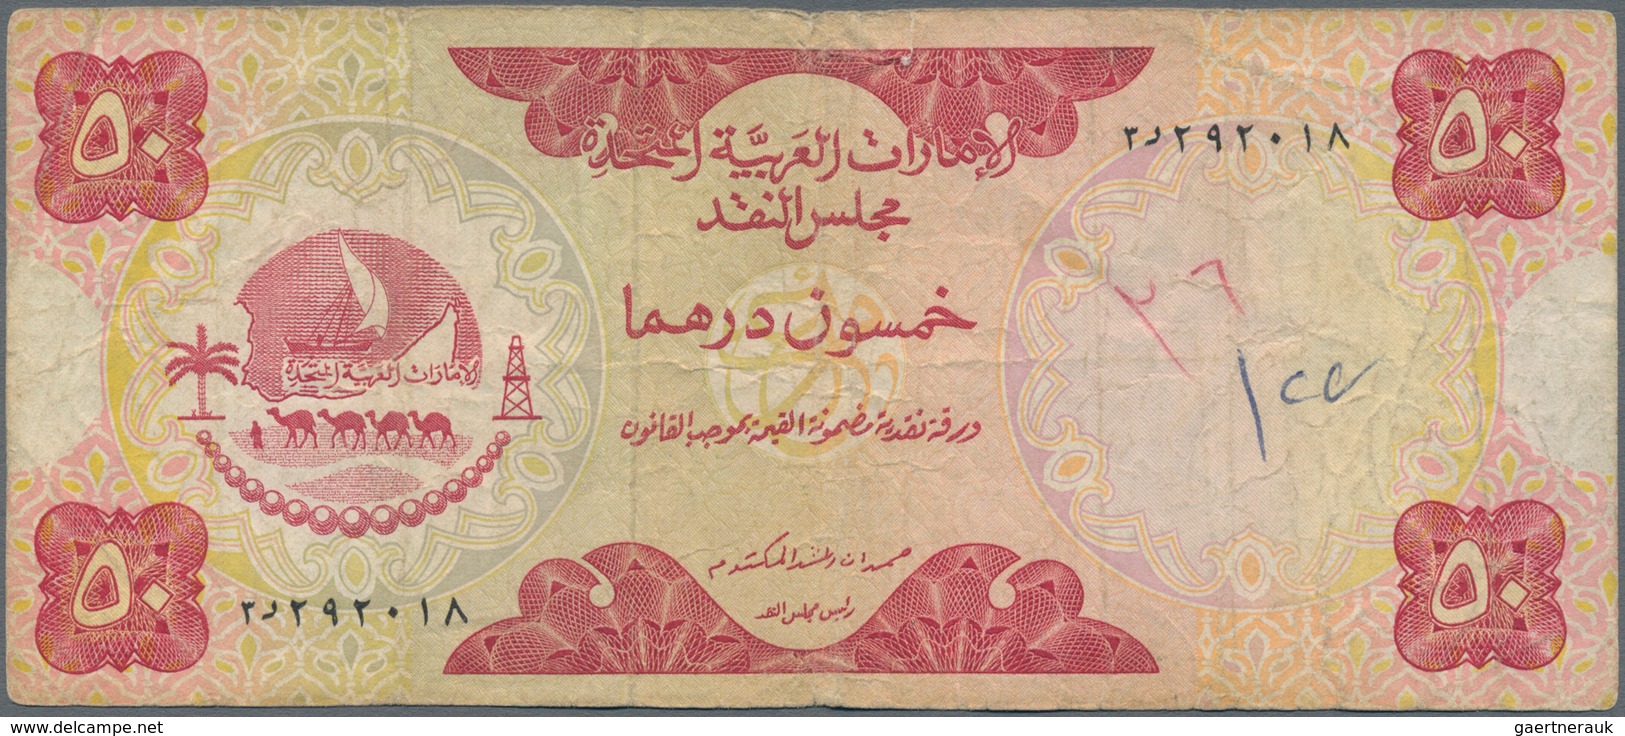 United Arab Emirates / Vereinigte Arabische Emirate: United Arab Emirates Currency Board Pair With 5 - Emiratos Arabes Unidos